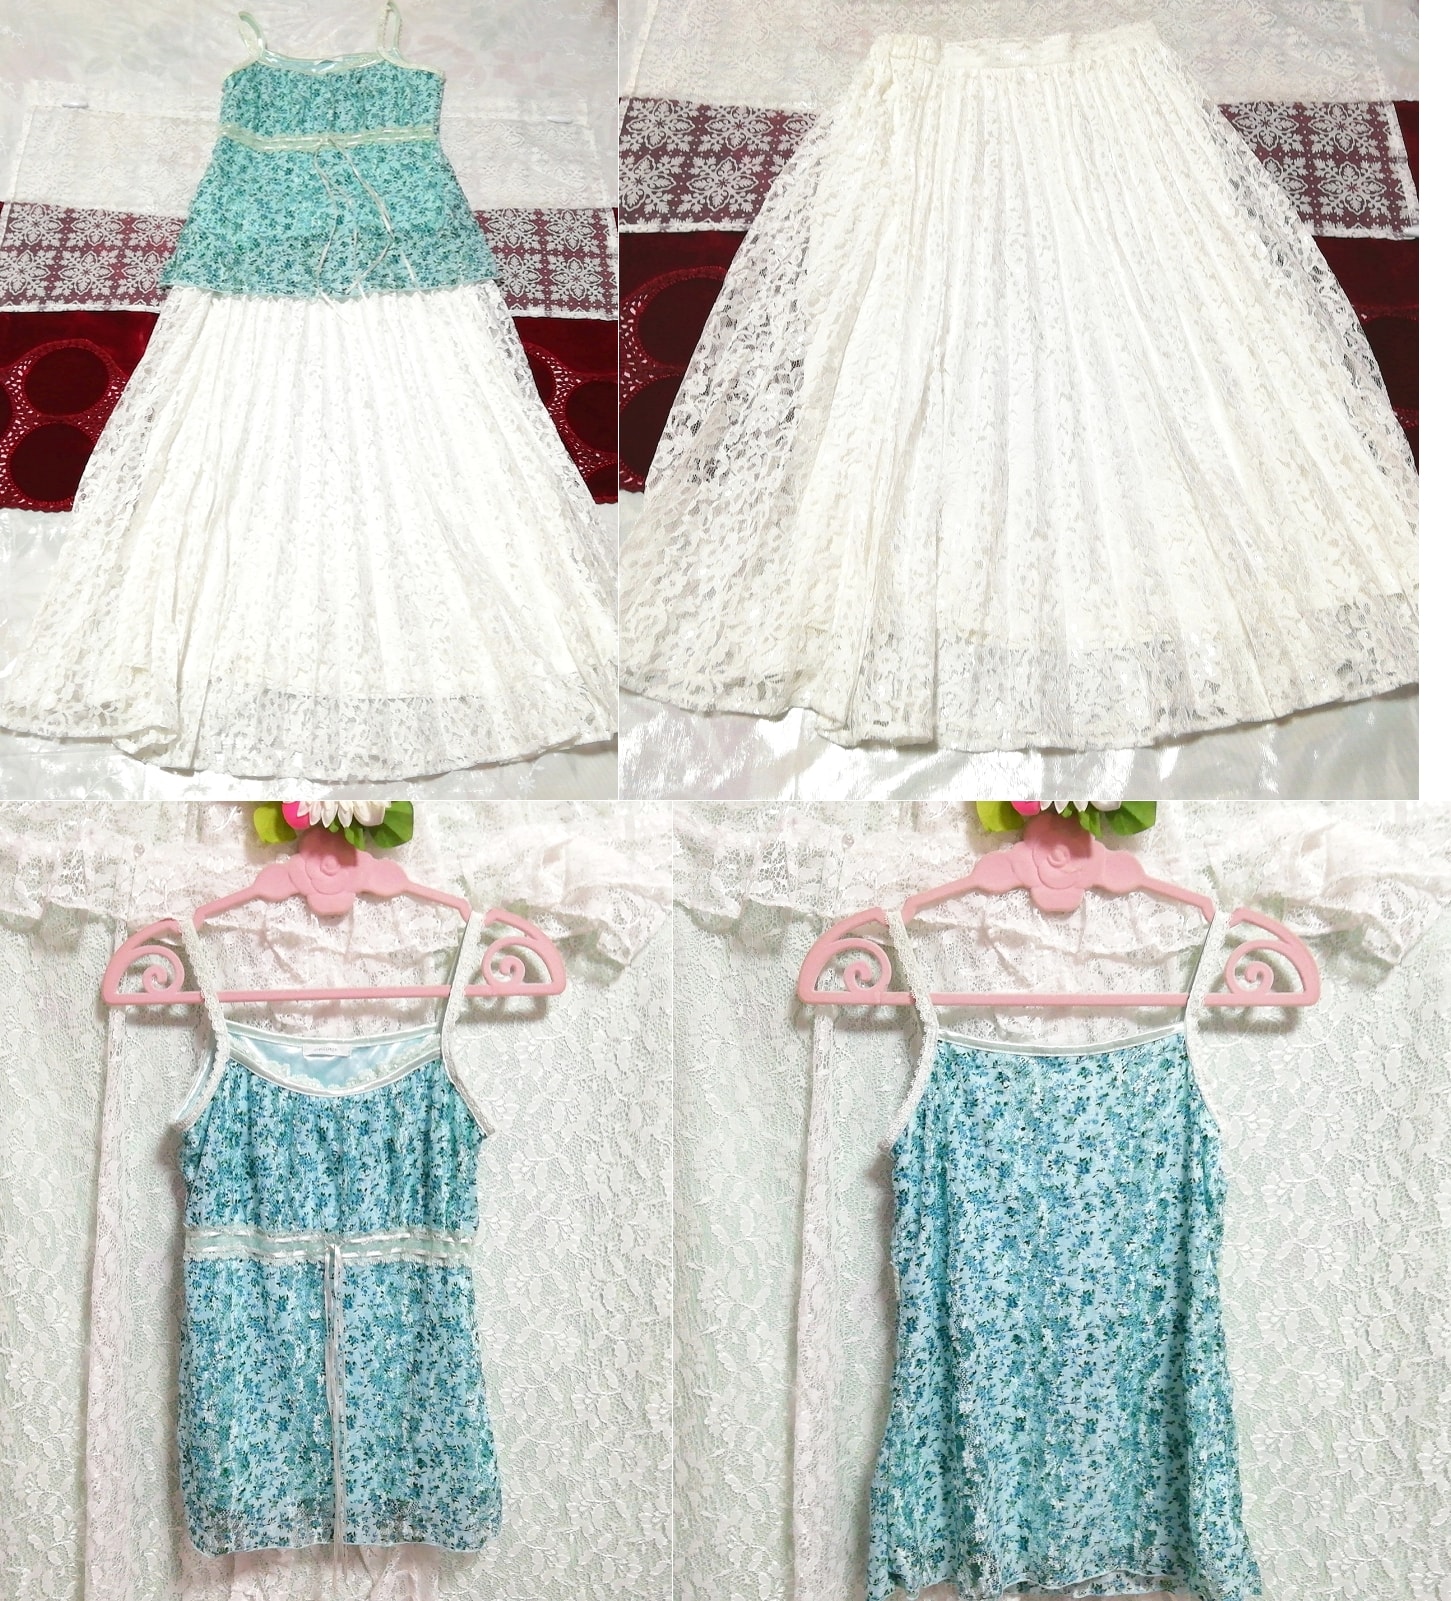 컬러 그린 꽃무늬 프릴 레이스 캐미솔 네글리제 나이트가운 화이트 레이스 롱스커트 2P, 패션, 숙녀 패션, 잠옷, 잠옷